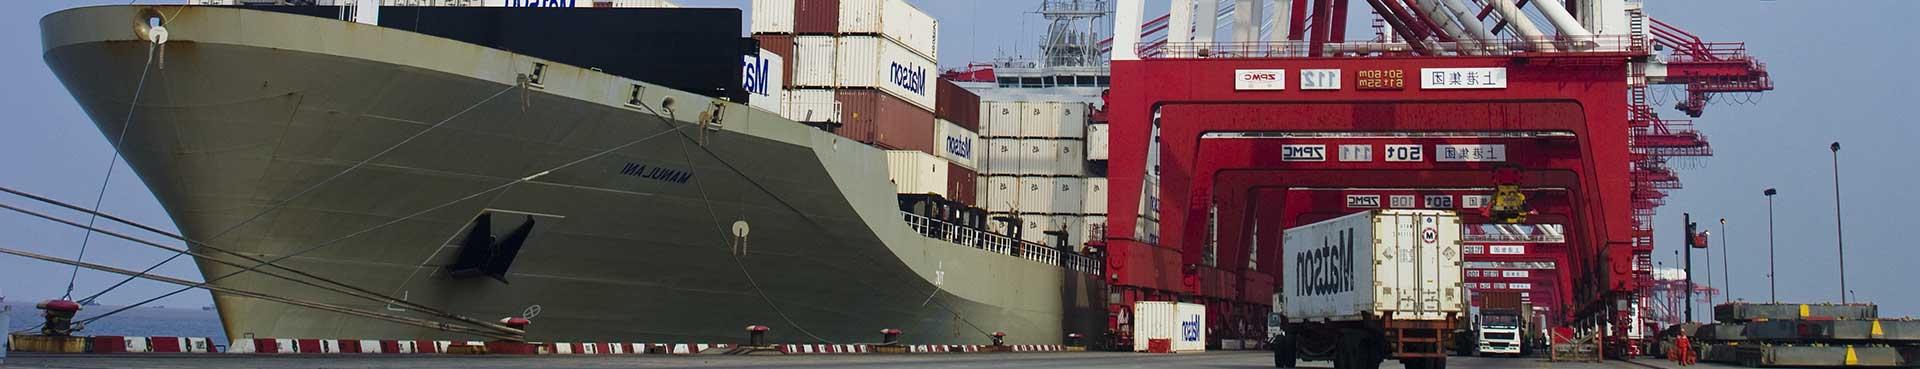 澳博体育app下载集装箱船Manulani在码头准备从China出发.